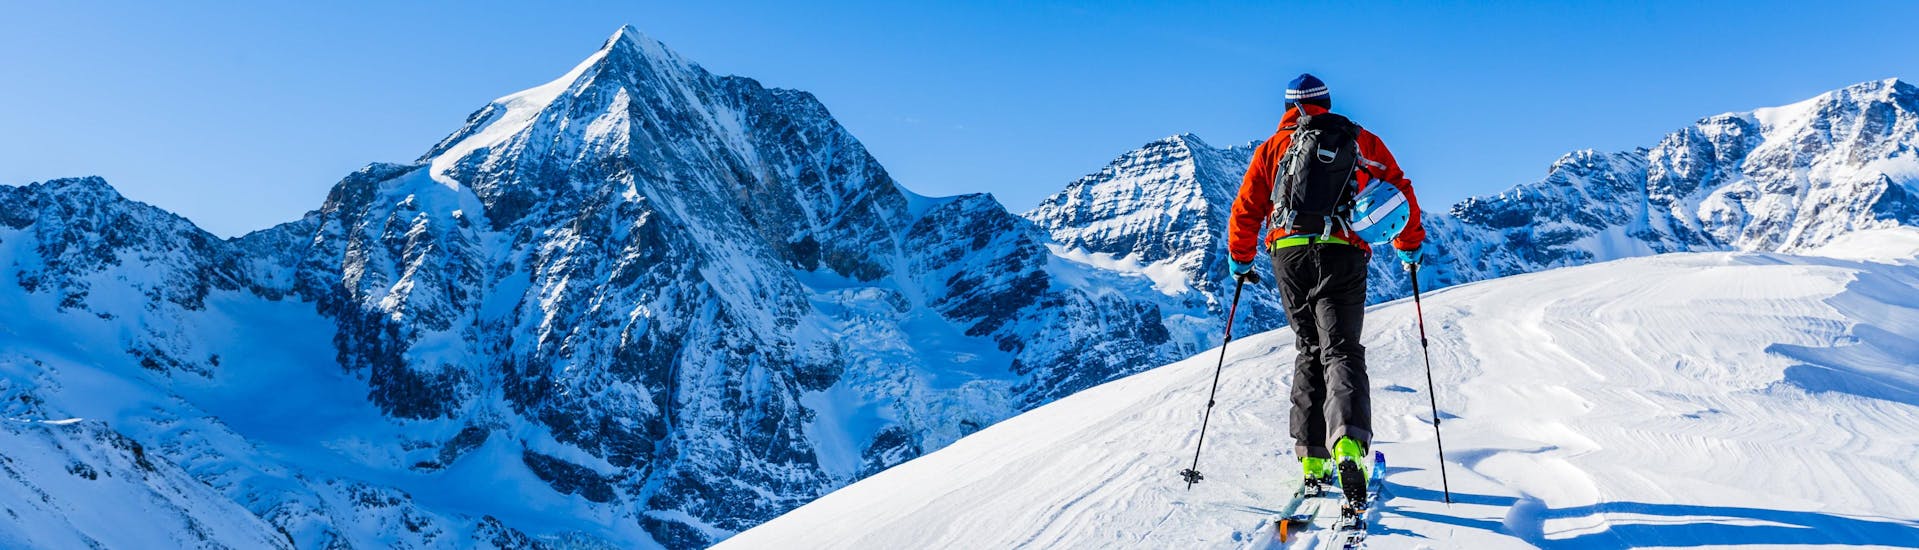 Een man verkent het besneeuwde berglandschap tijdens het skitoeren.